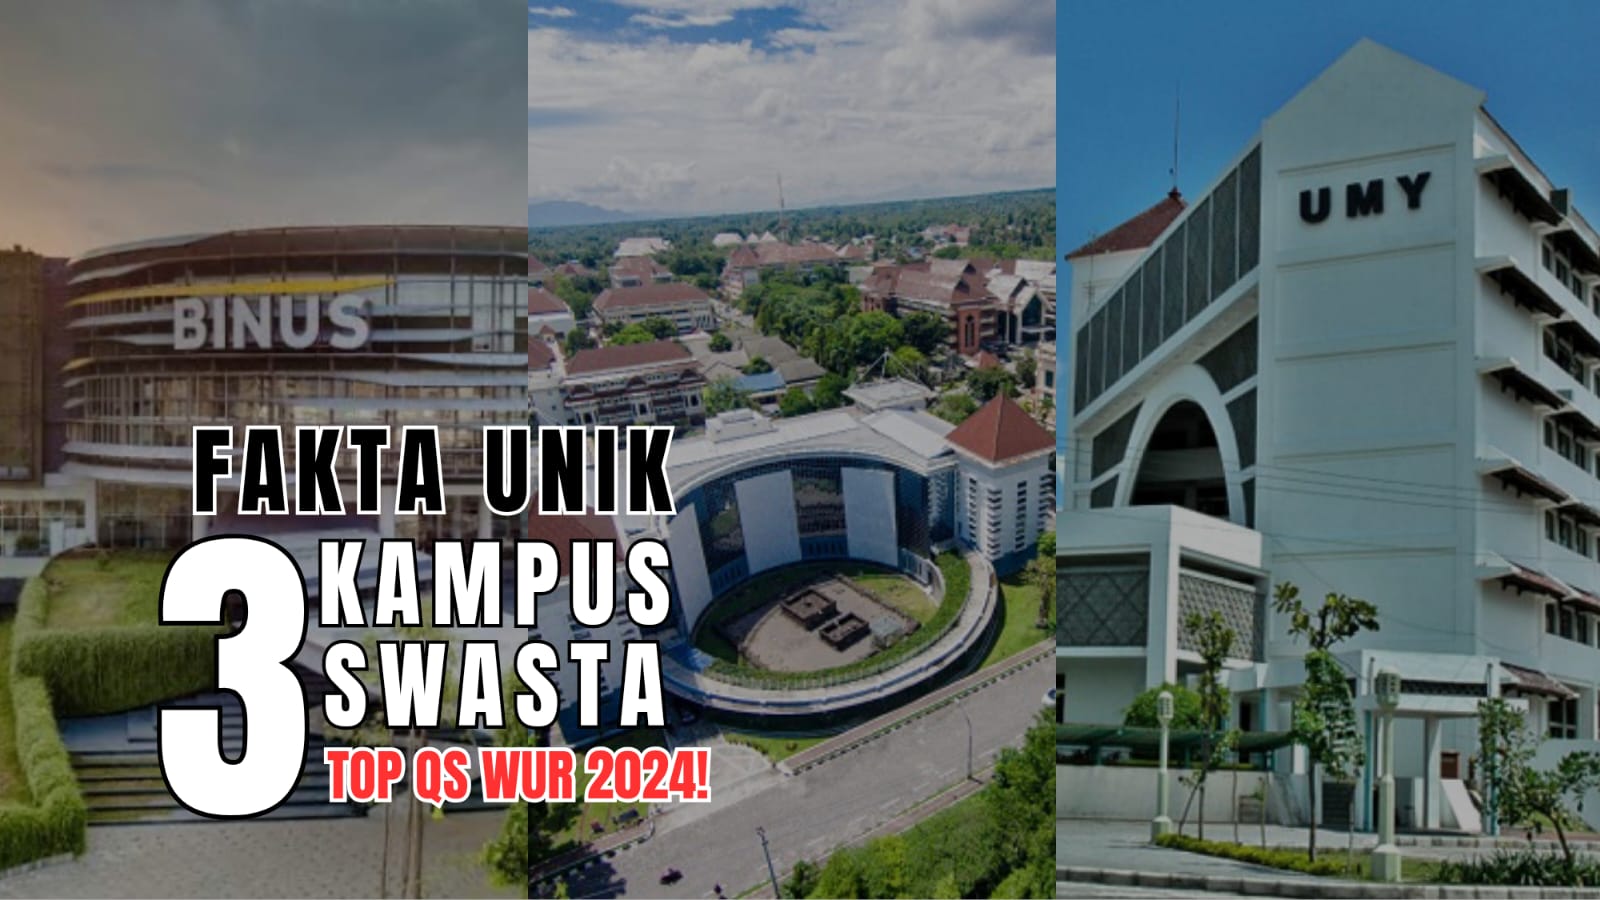 Fakta Unik 3 Kampus Swasta di Indonesia yang Masuk TOP QS WUR 2024!